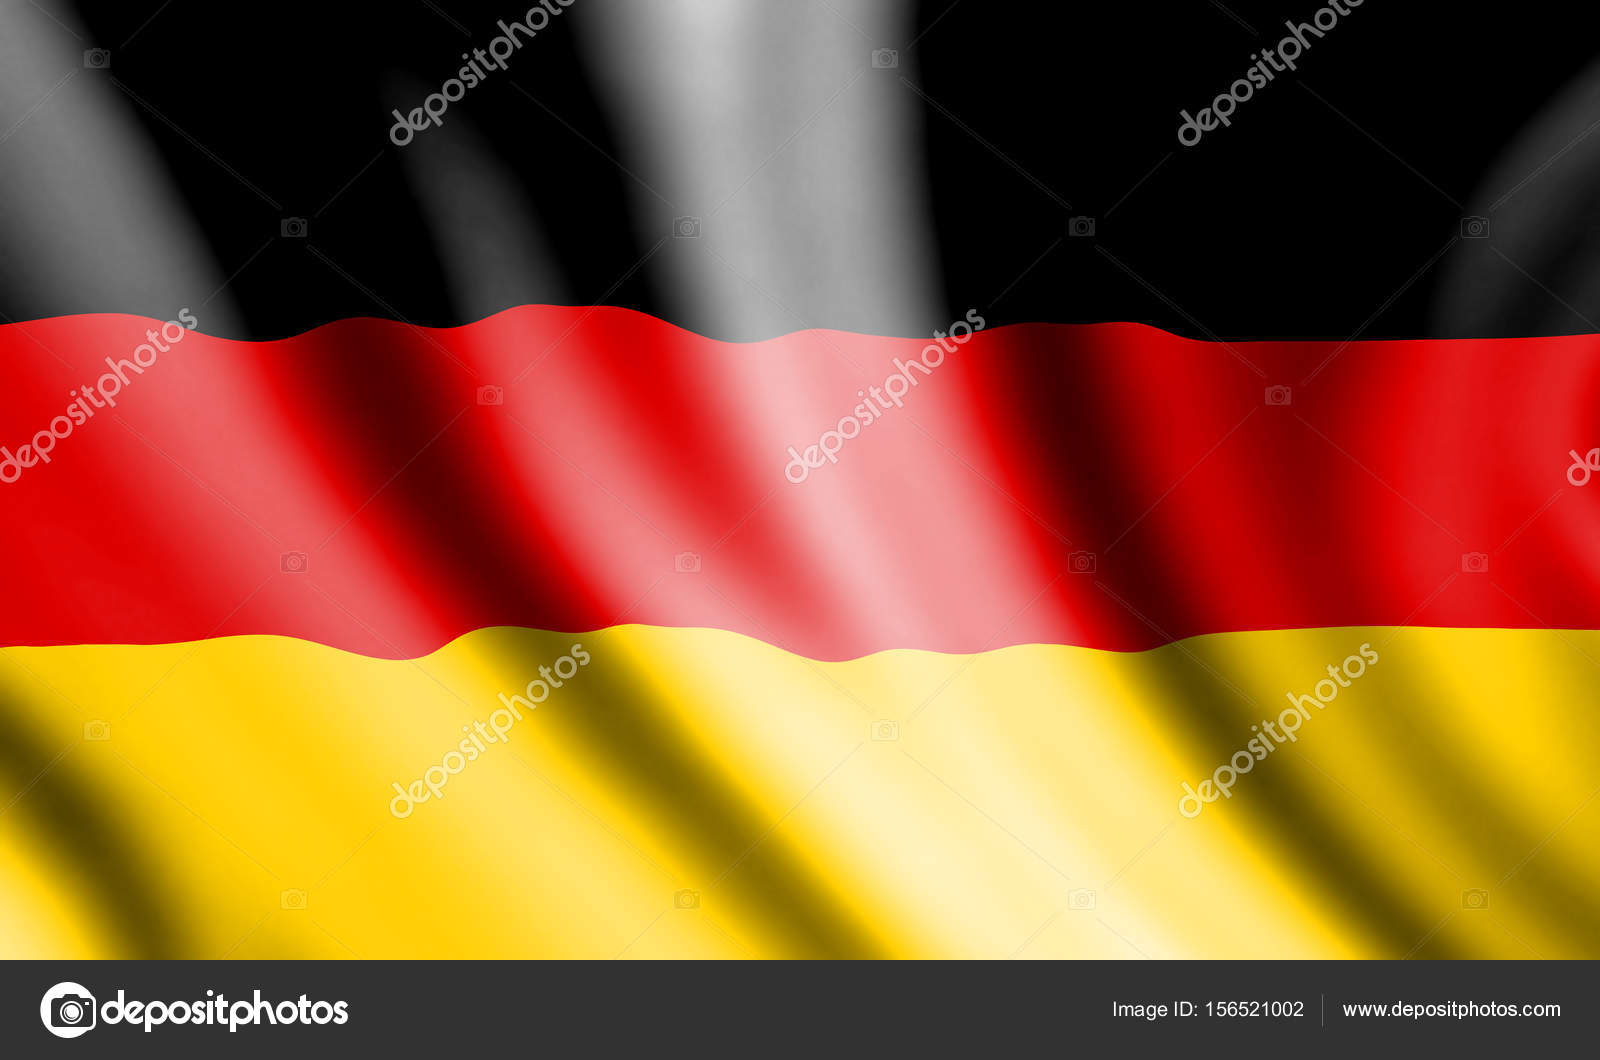 動物画像無料 無料印刷可能ドイツ 国旗 イラスト